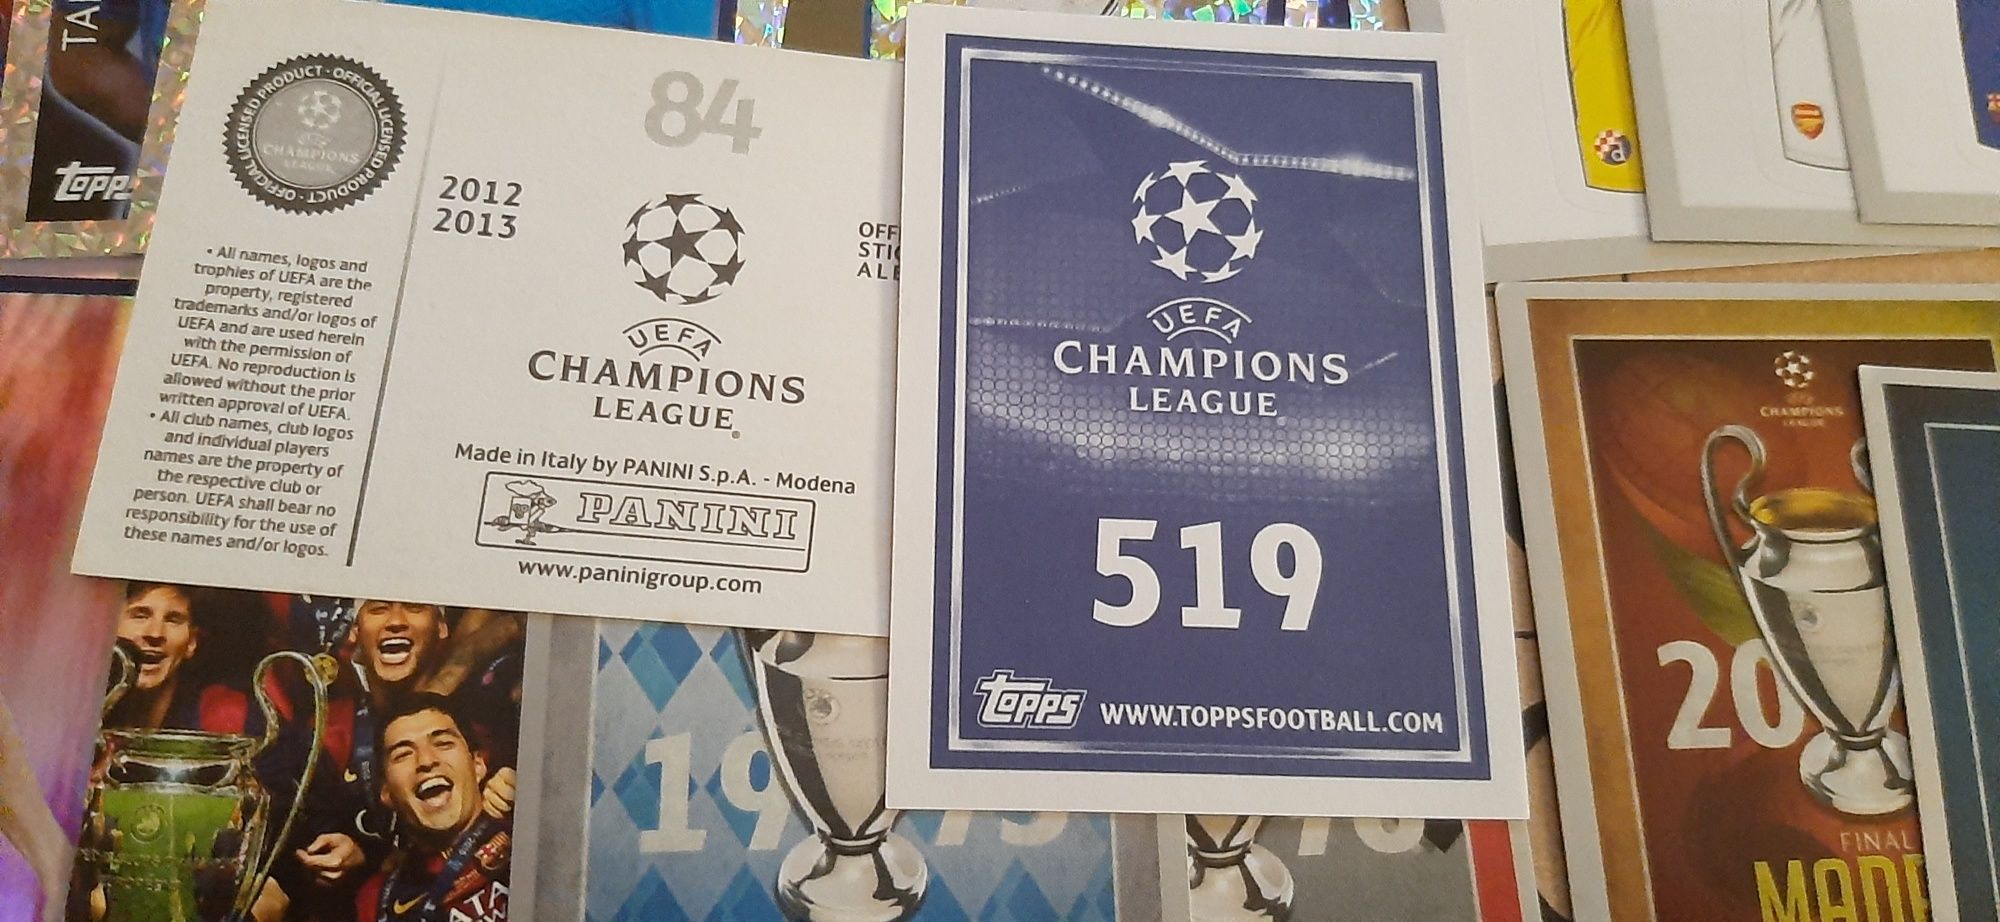 90 cromos champions league 2012/13 / 2015/16